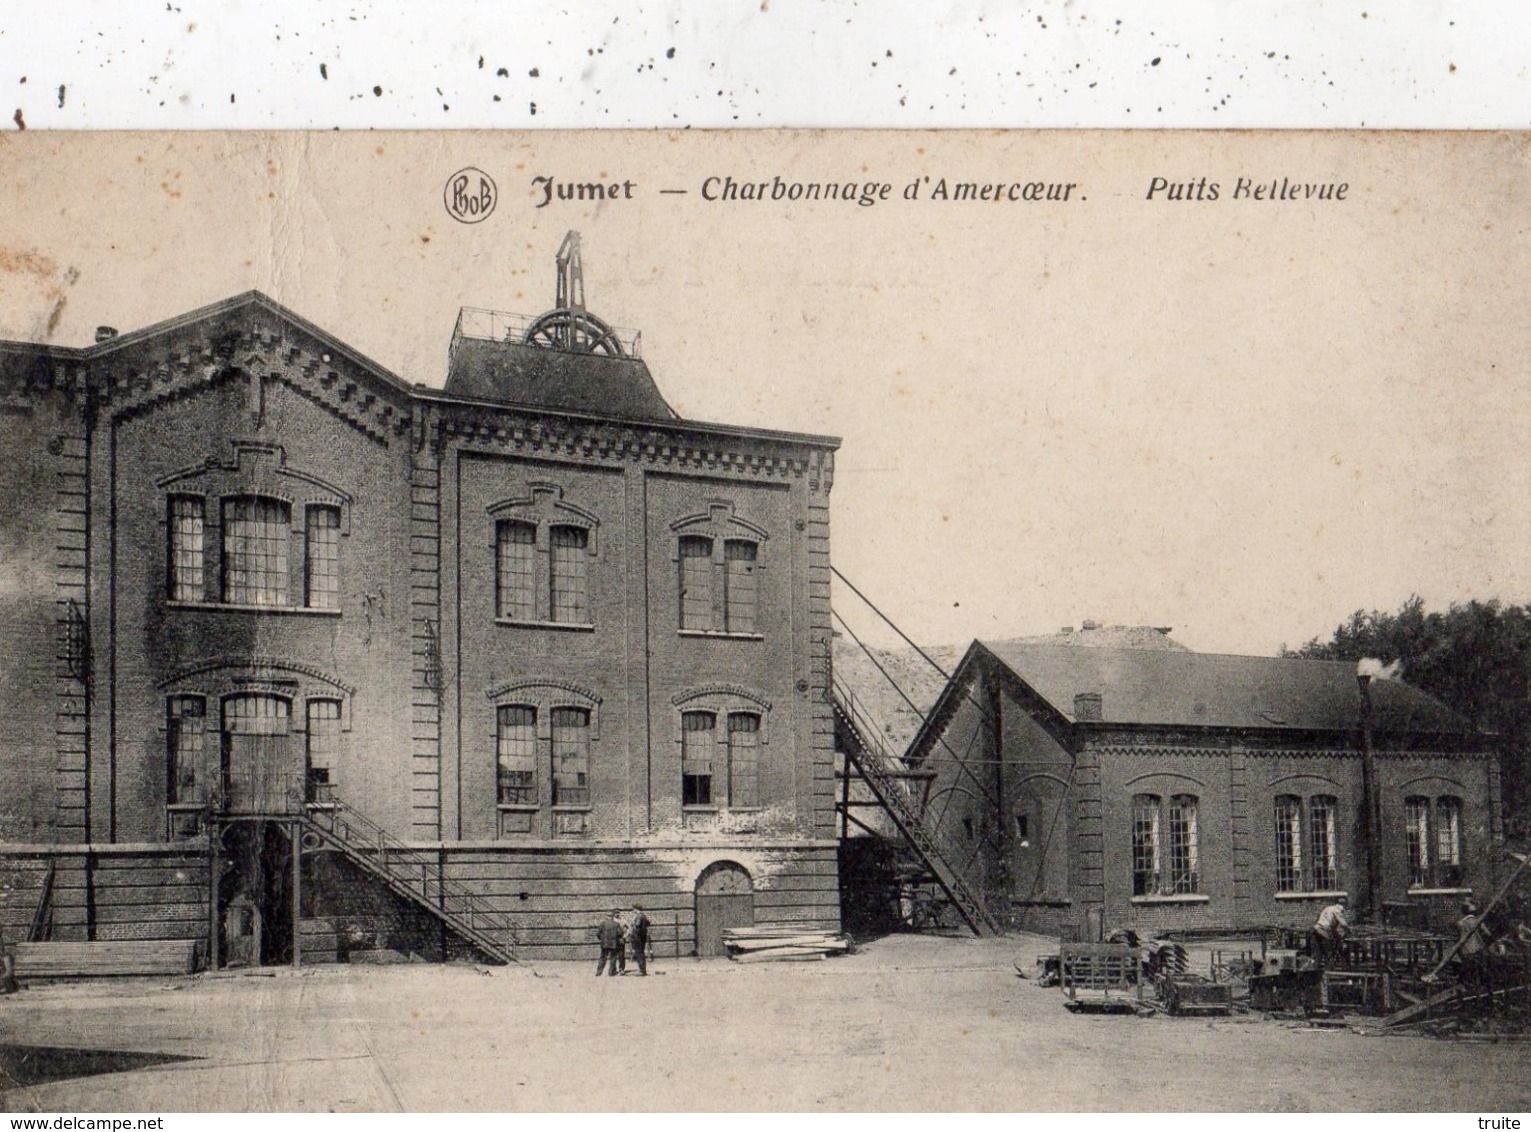 JUMET CHARBONNAGE D'AMECOEUR PUITS BELLEVUE (THEME MINE) - Charleroi